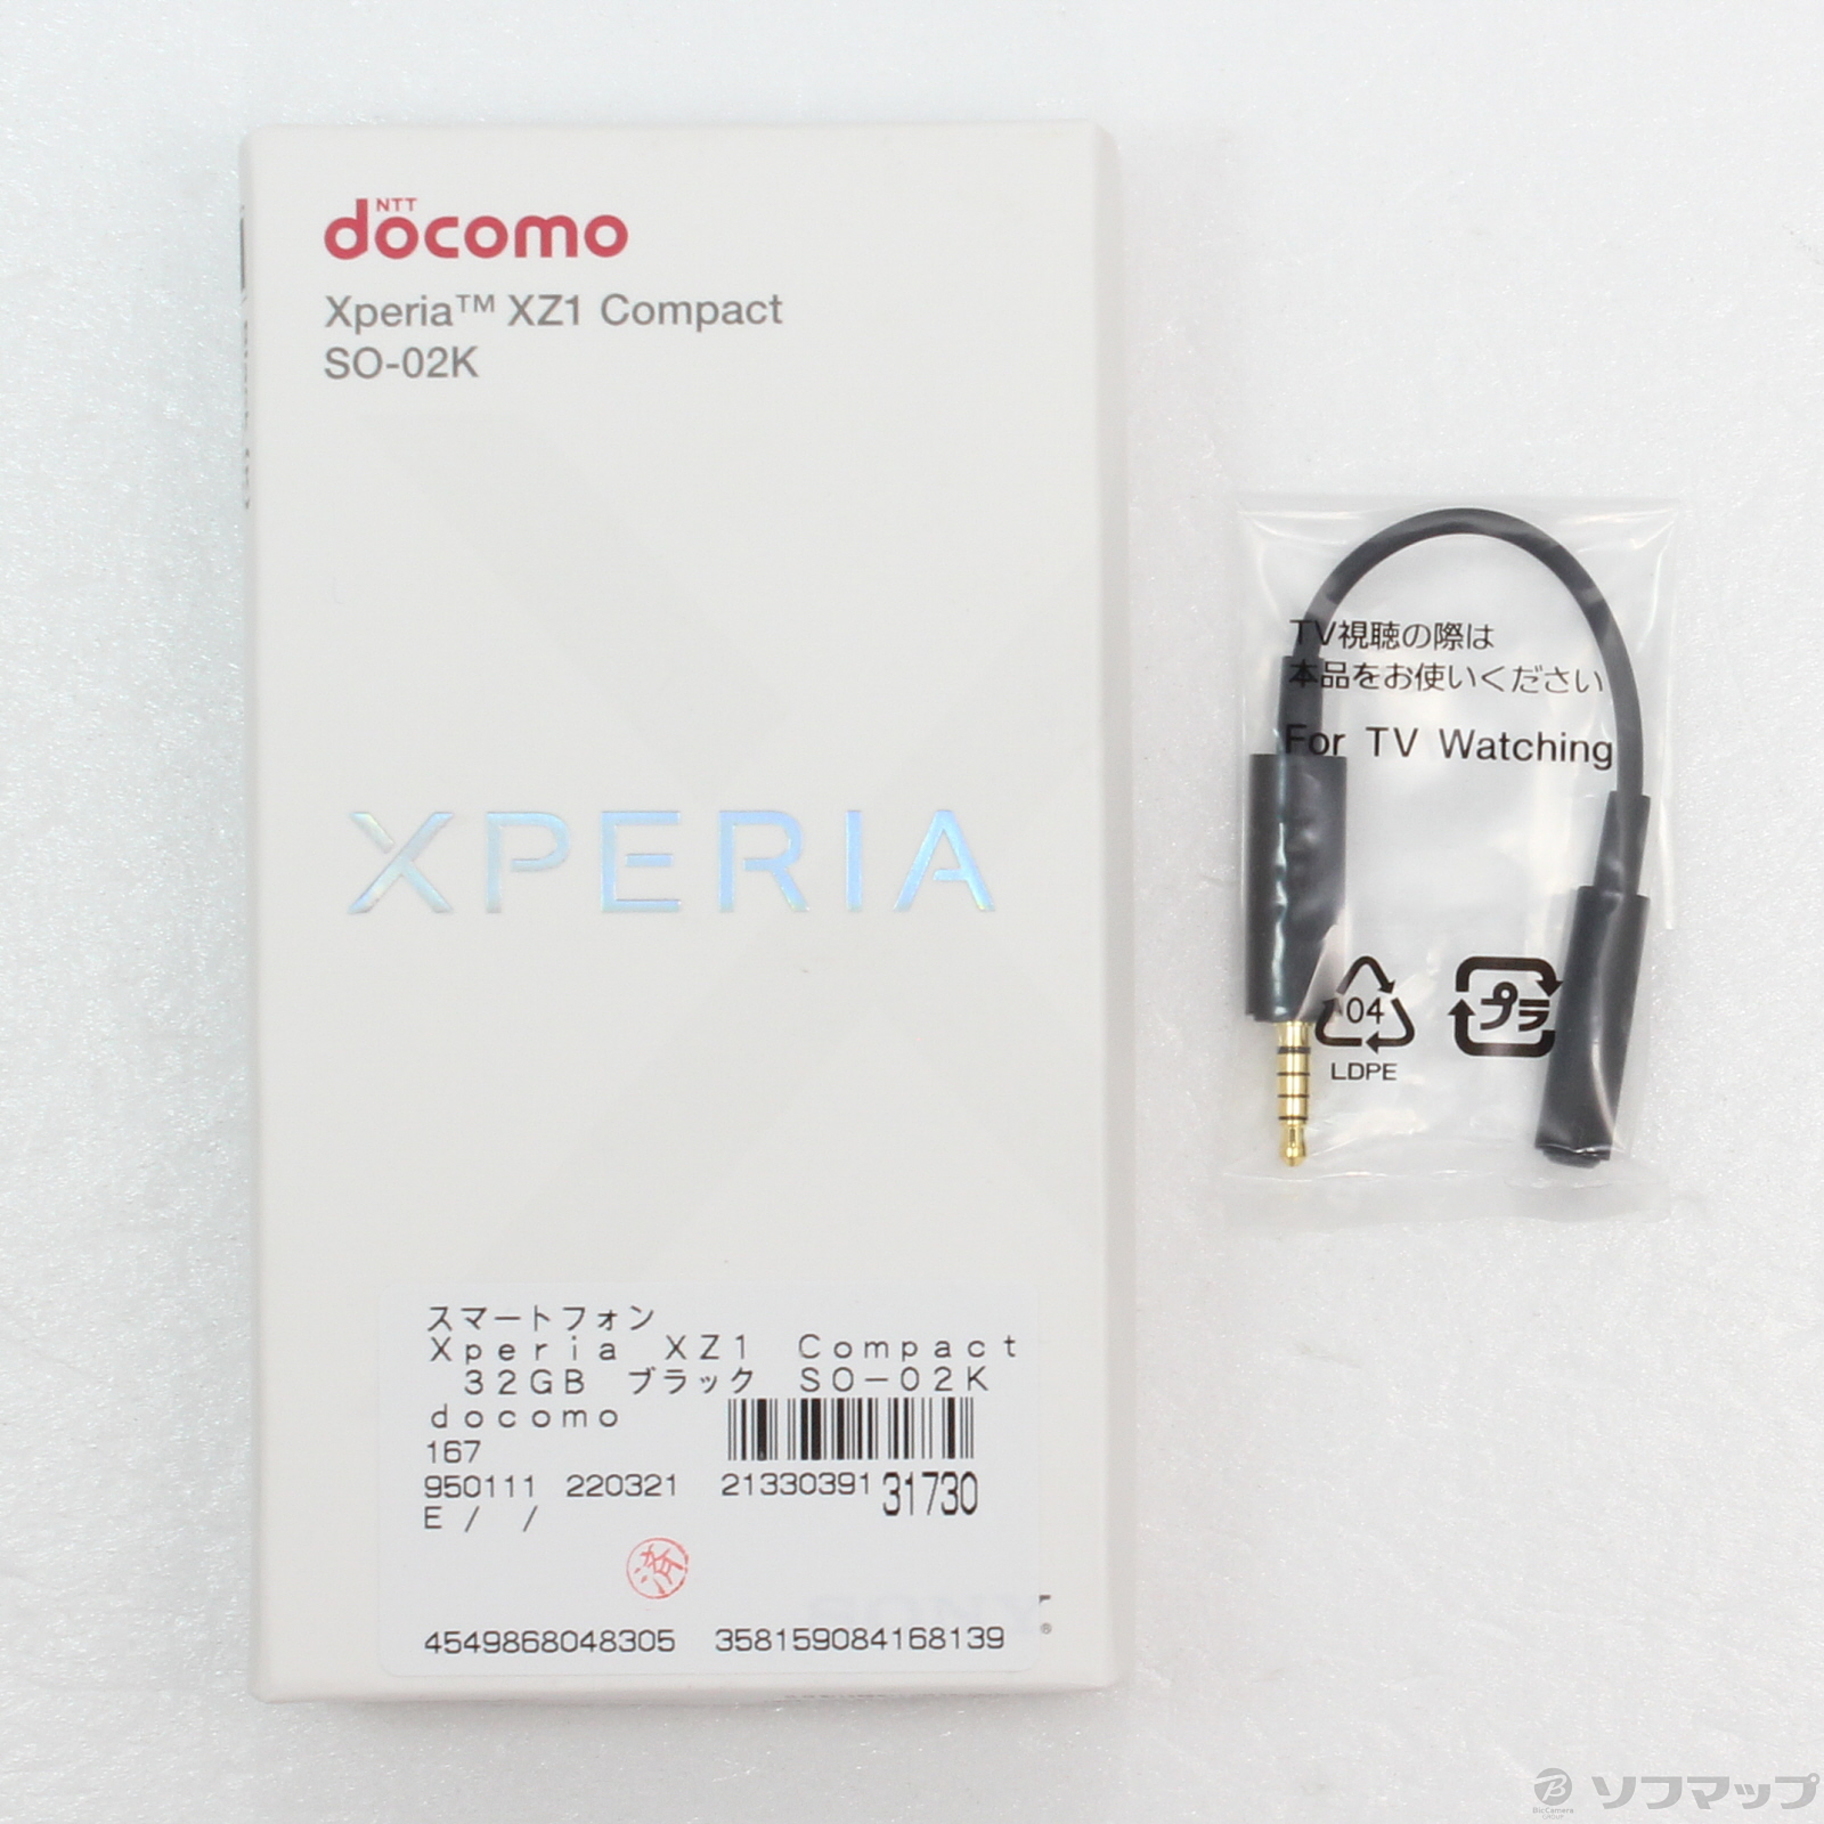 中古】Xperia XZ1 Compact 32GB ブラック SO-02K docomoロック解除SIM